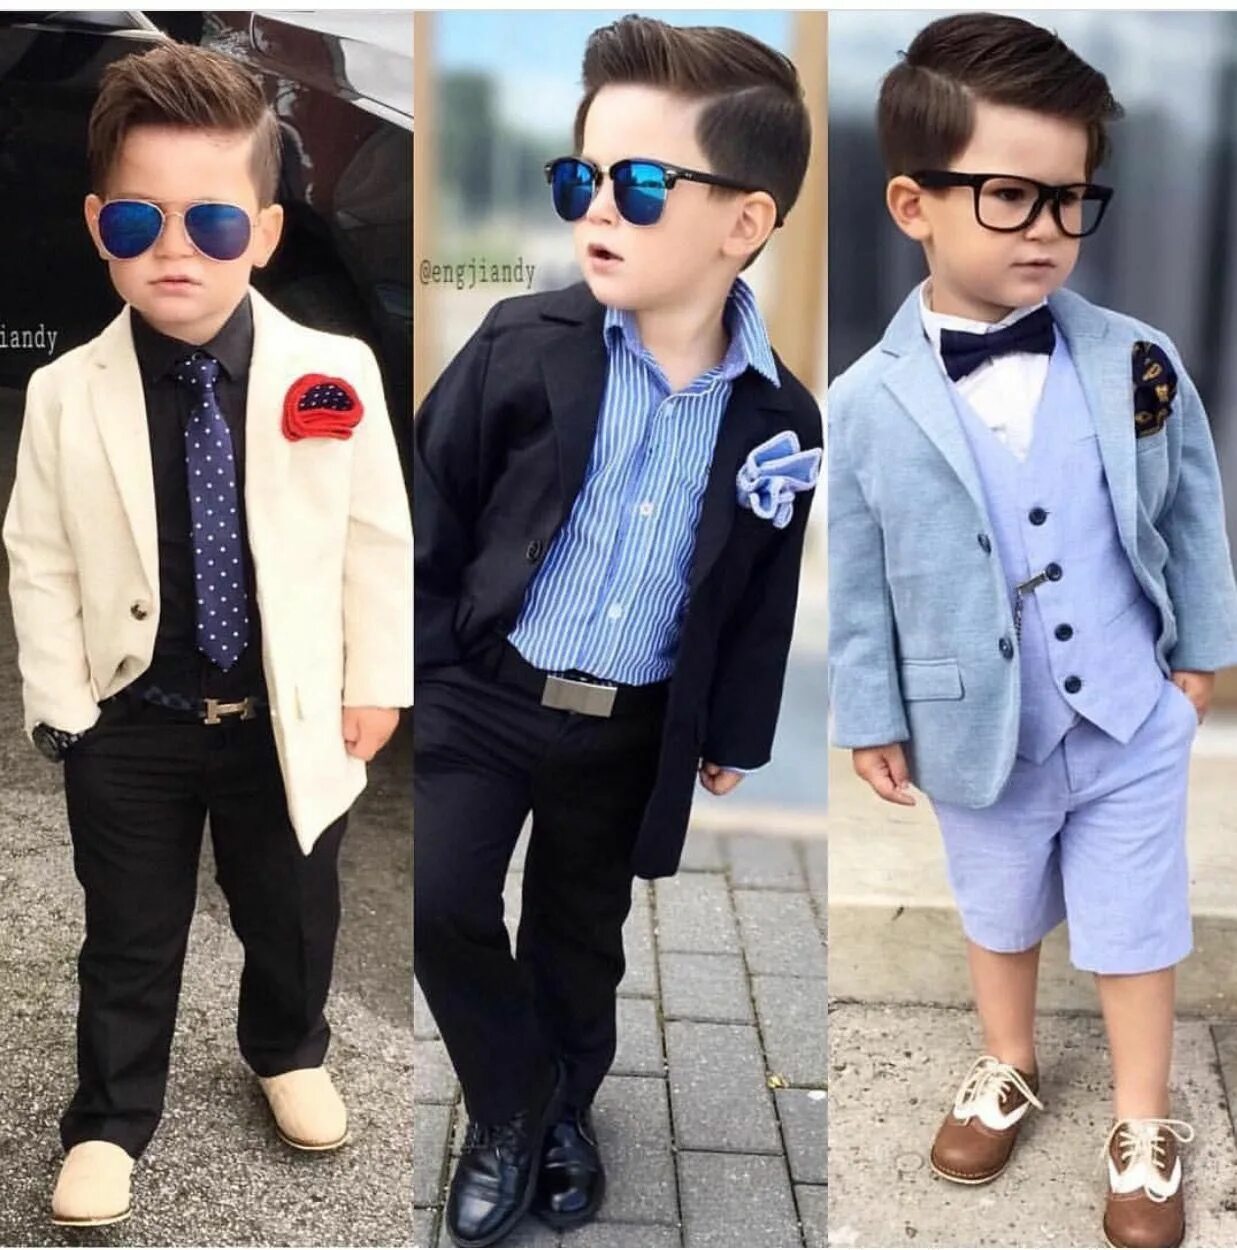 Мальчик стильно одет. Стильный наряд для мальчика. Стильный образ для мальчика. Модные мальчики. Модные дети мальчики.